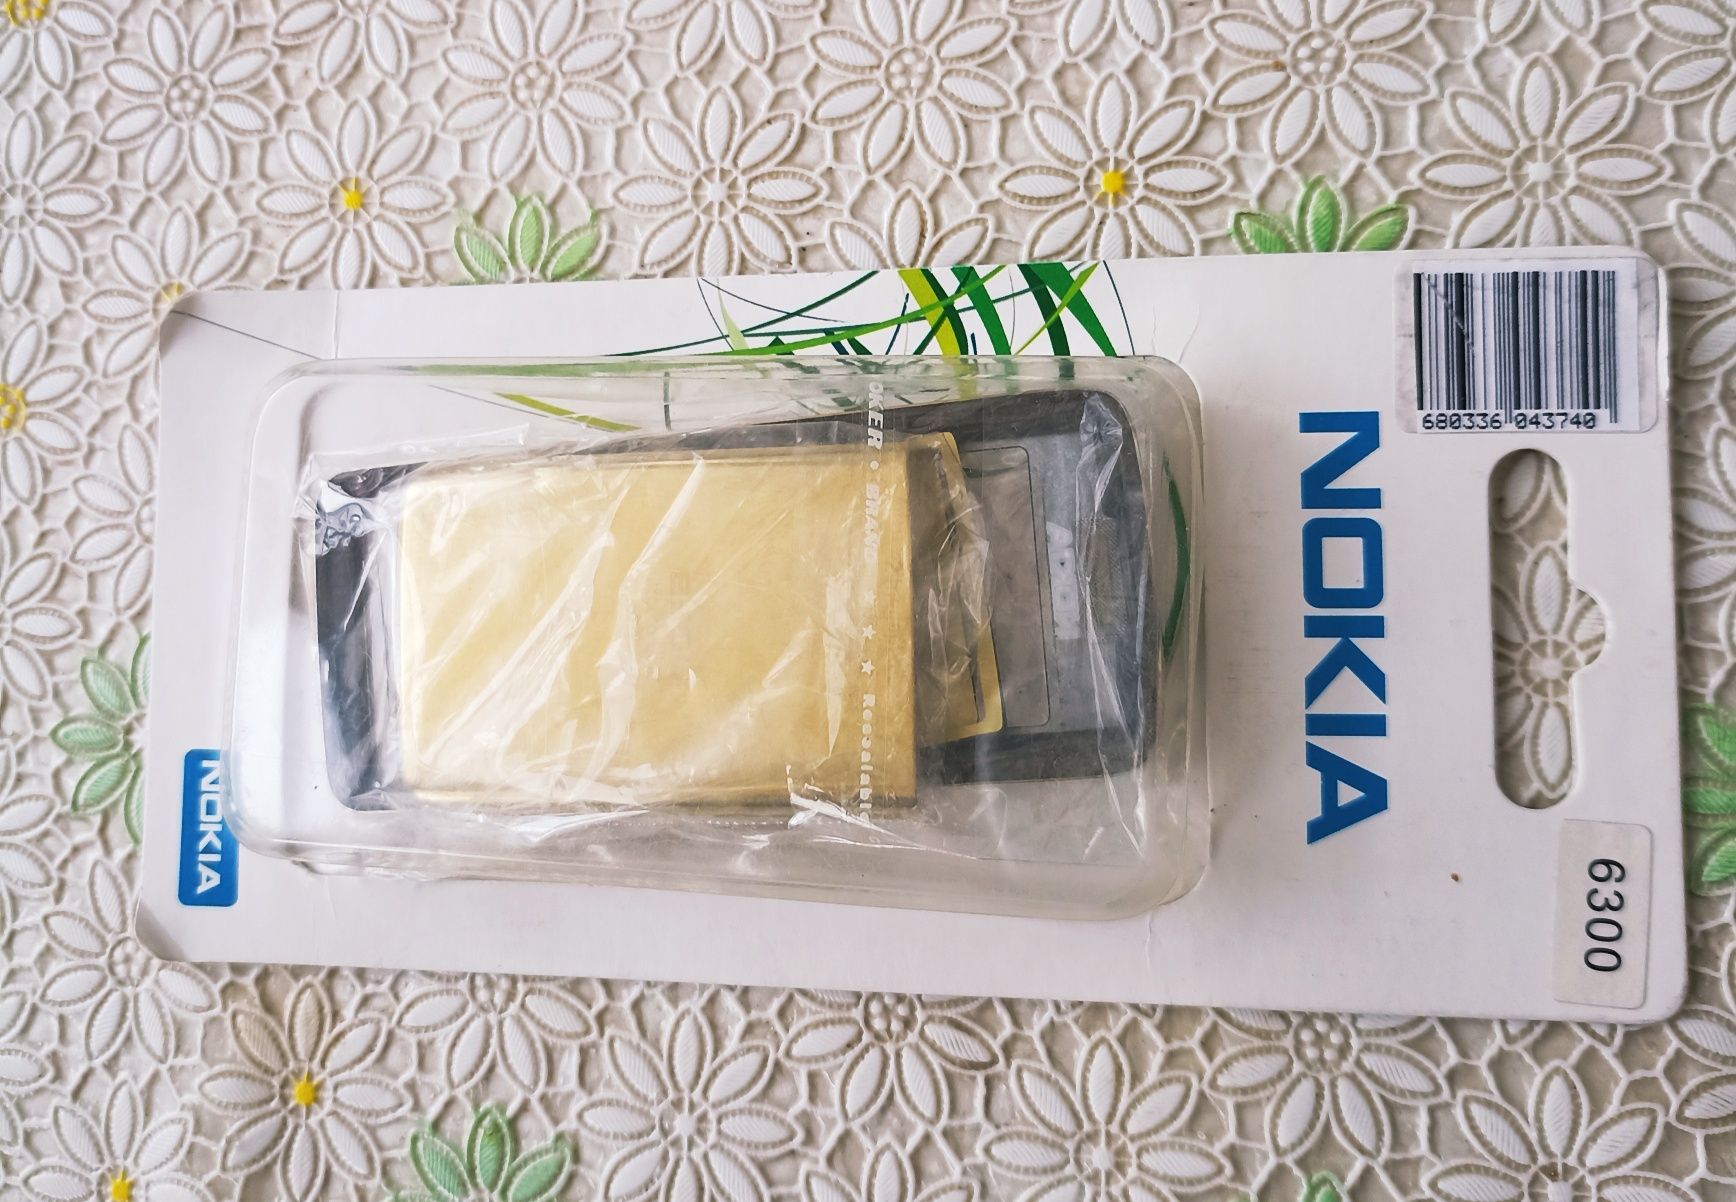 Продам корпус Нокиа 6300, Nokia 6300.